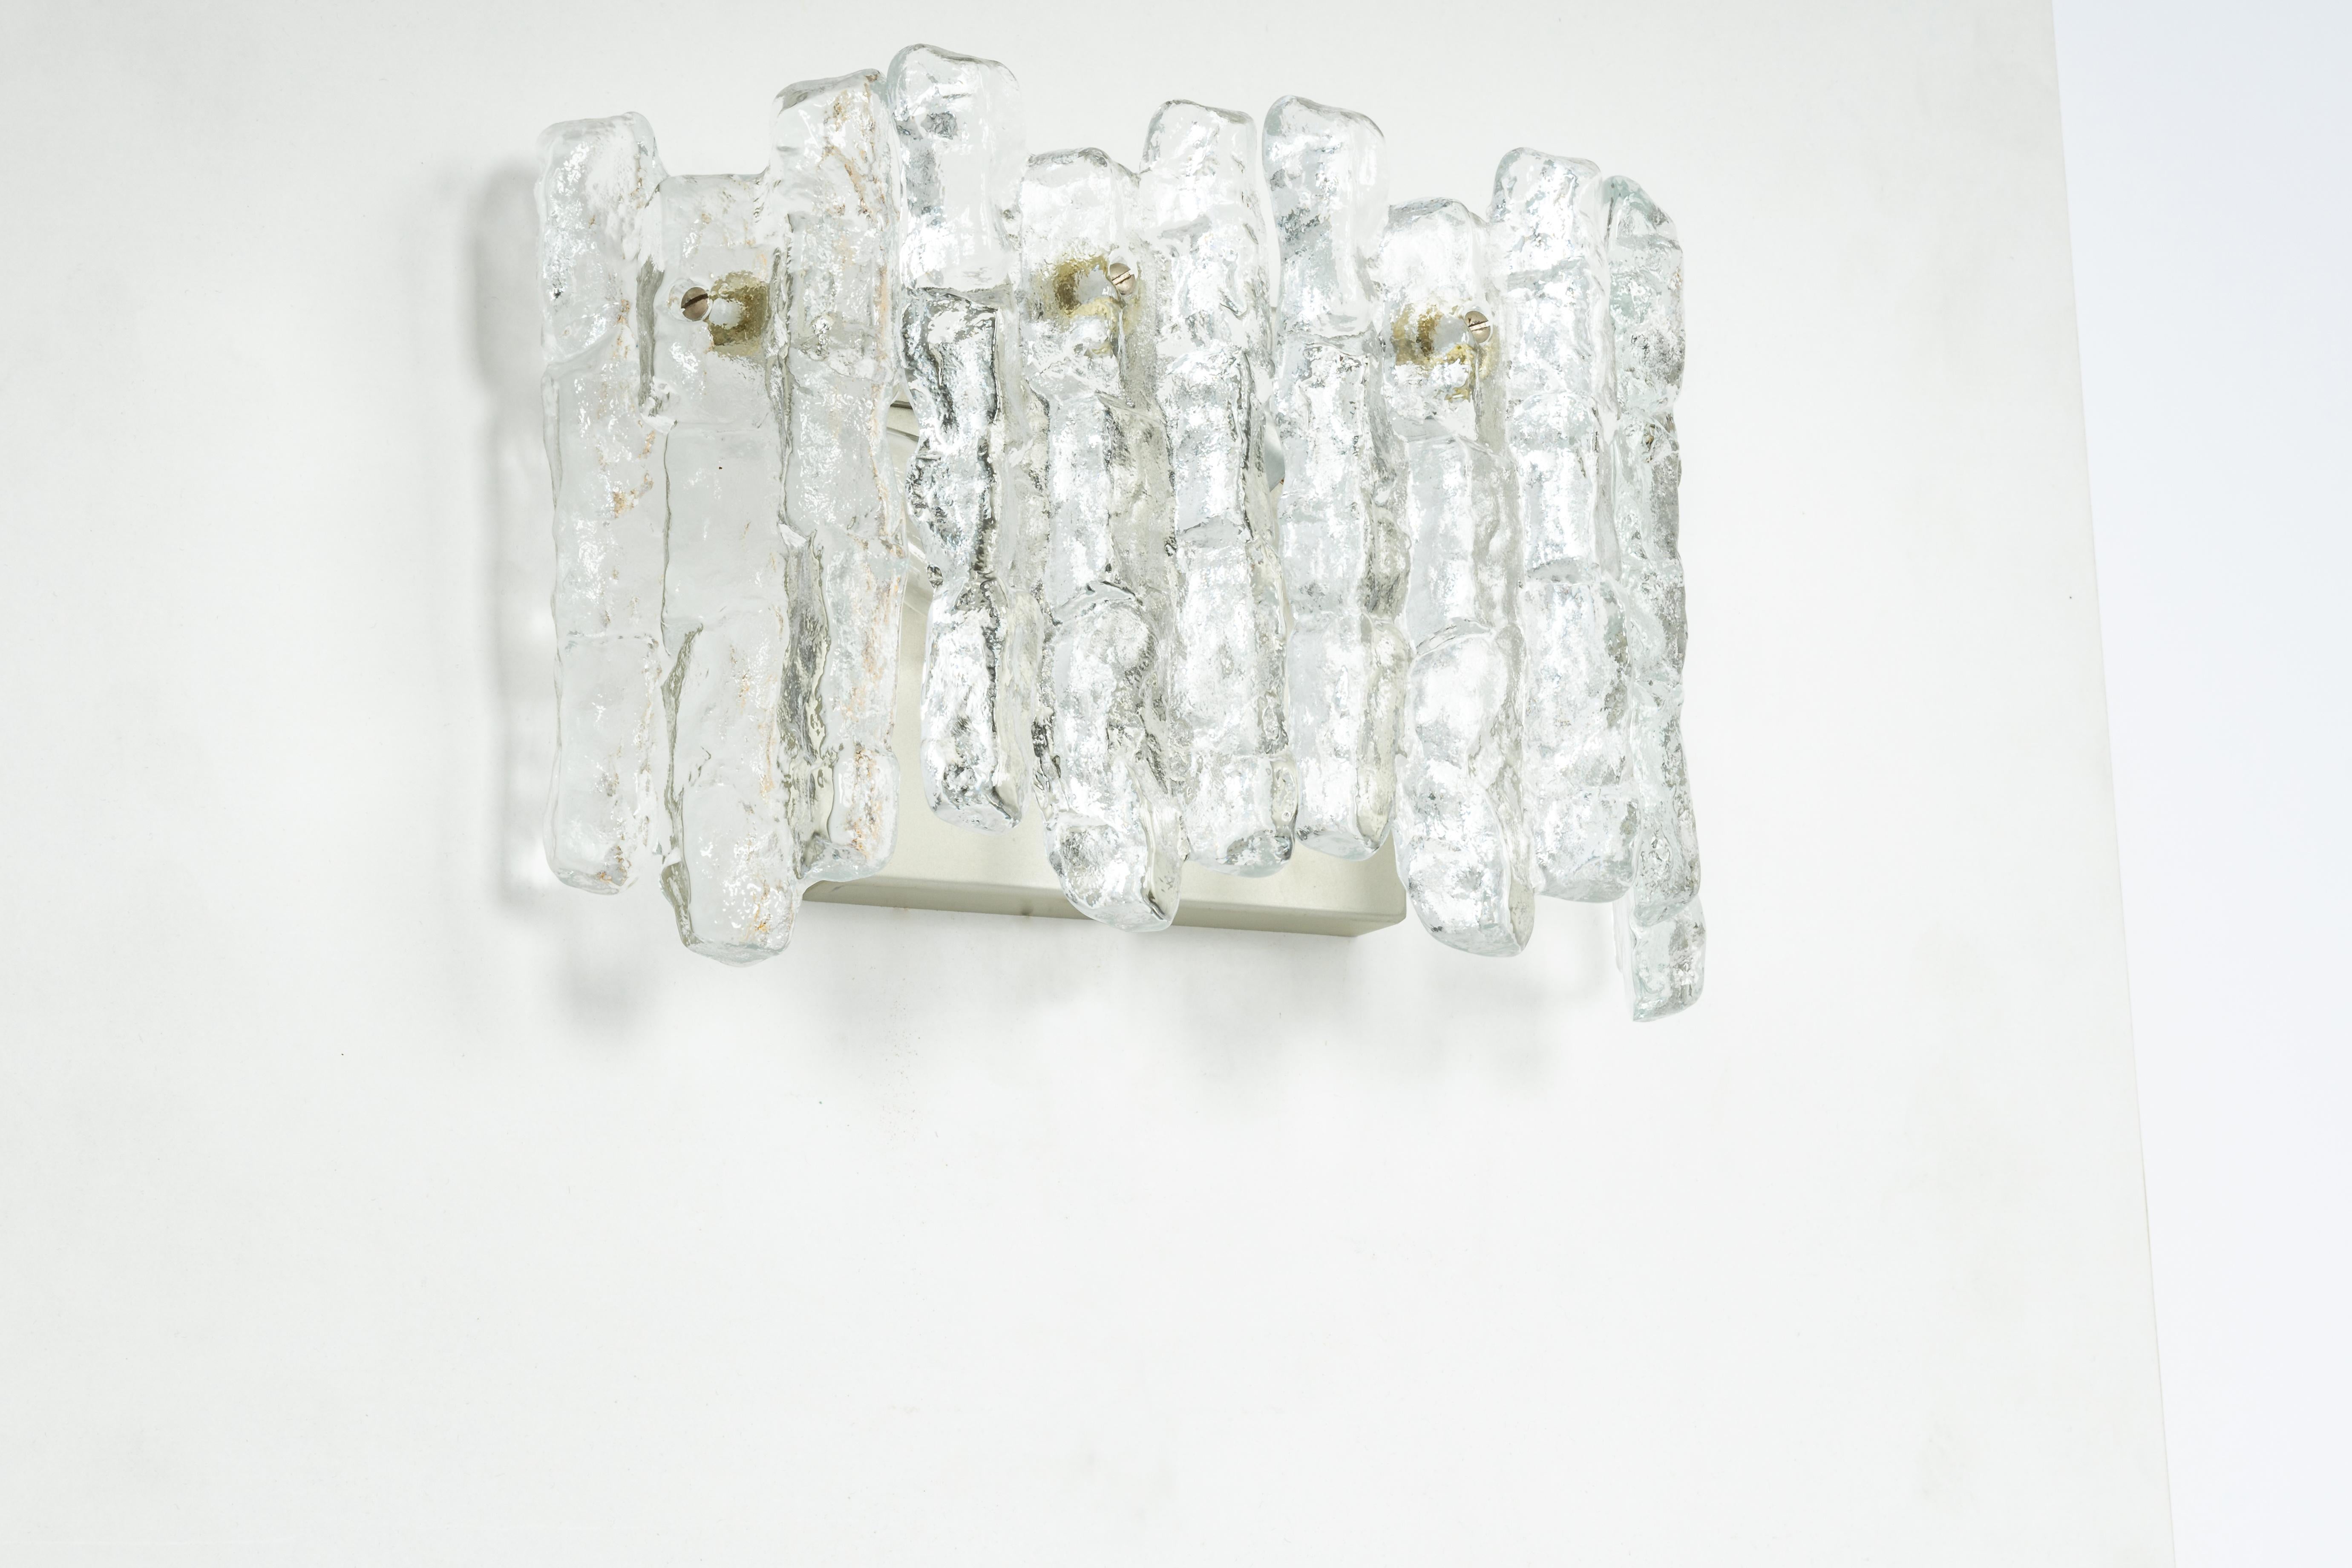 Fantastisches Paar Wandleuchter aus der Mitte des Jahrhunderts mit vier Murano-Eisgläsern, hergestellt von Kalmar, Österreich, ca. 1960-1969.

Jede Leuchte benötigt 2 x E14 kleine Glühbirnen
Glühbirnen sind nicht enthalten. Dieses Gerät kann in